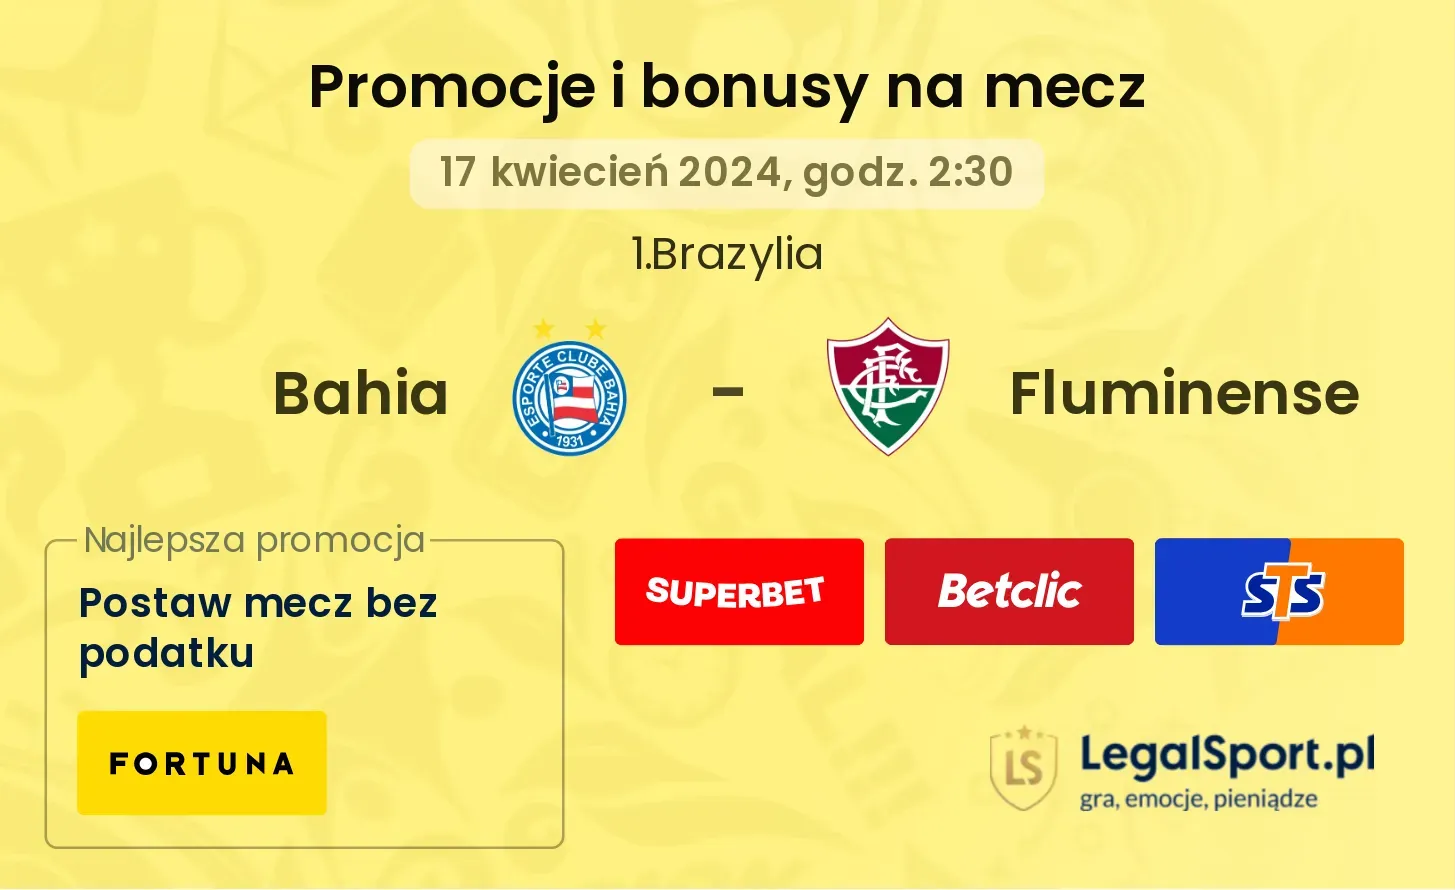 Bahia - Fluminense promocje bonusy na mecz